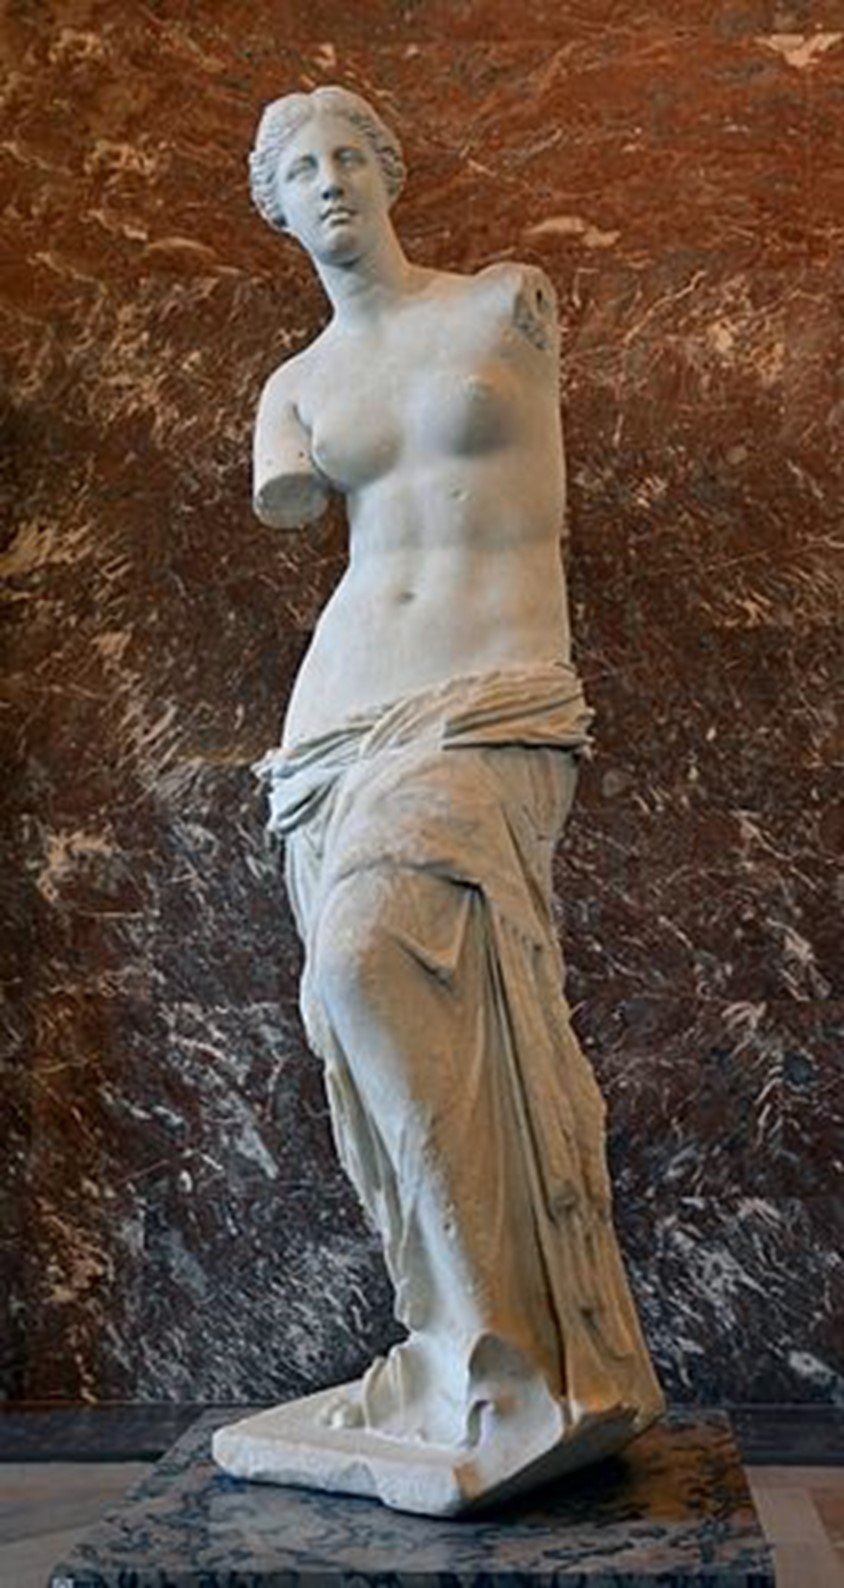 Figure 11. Venus de Milo